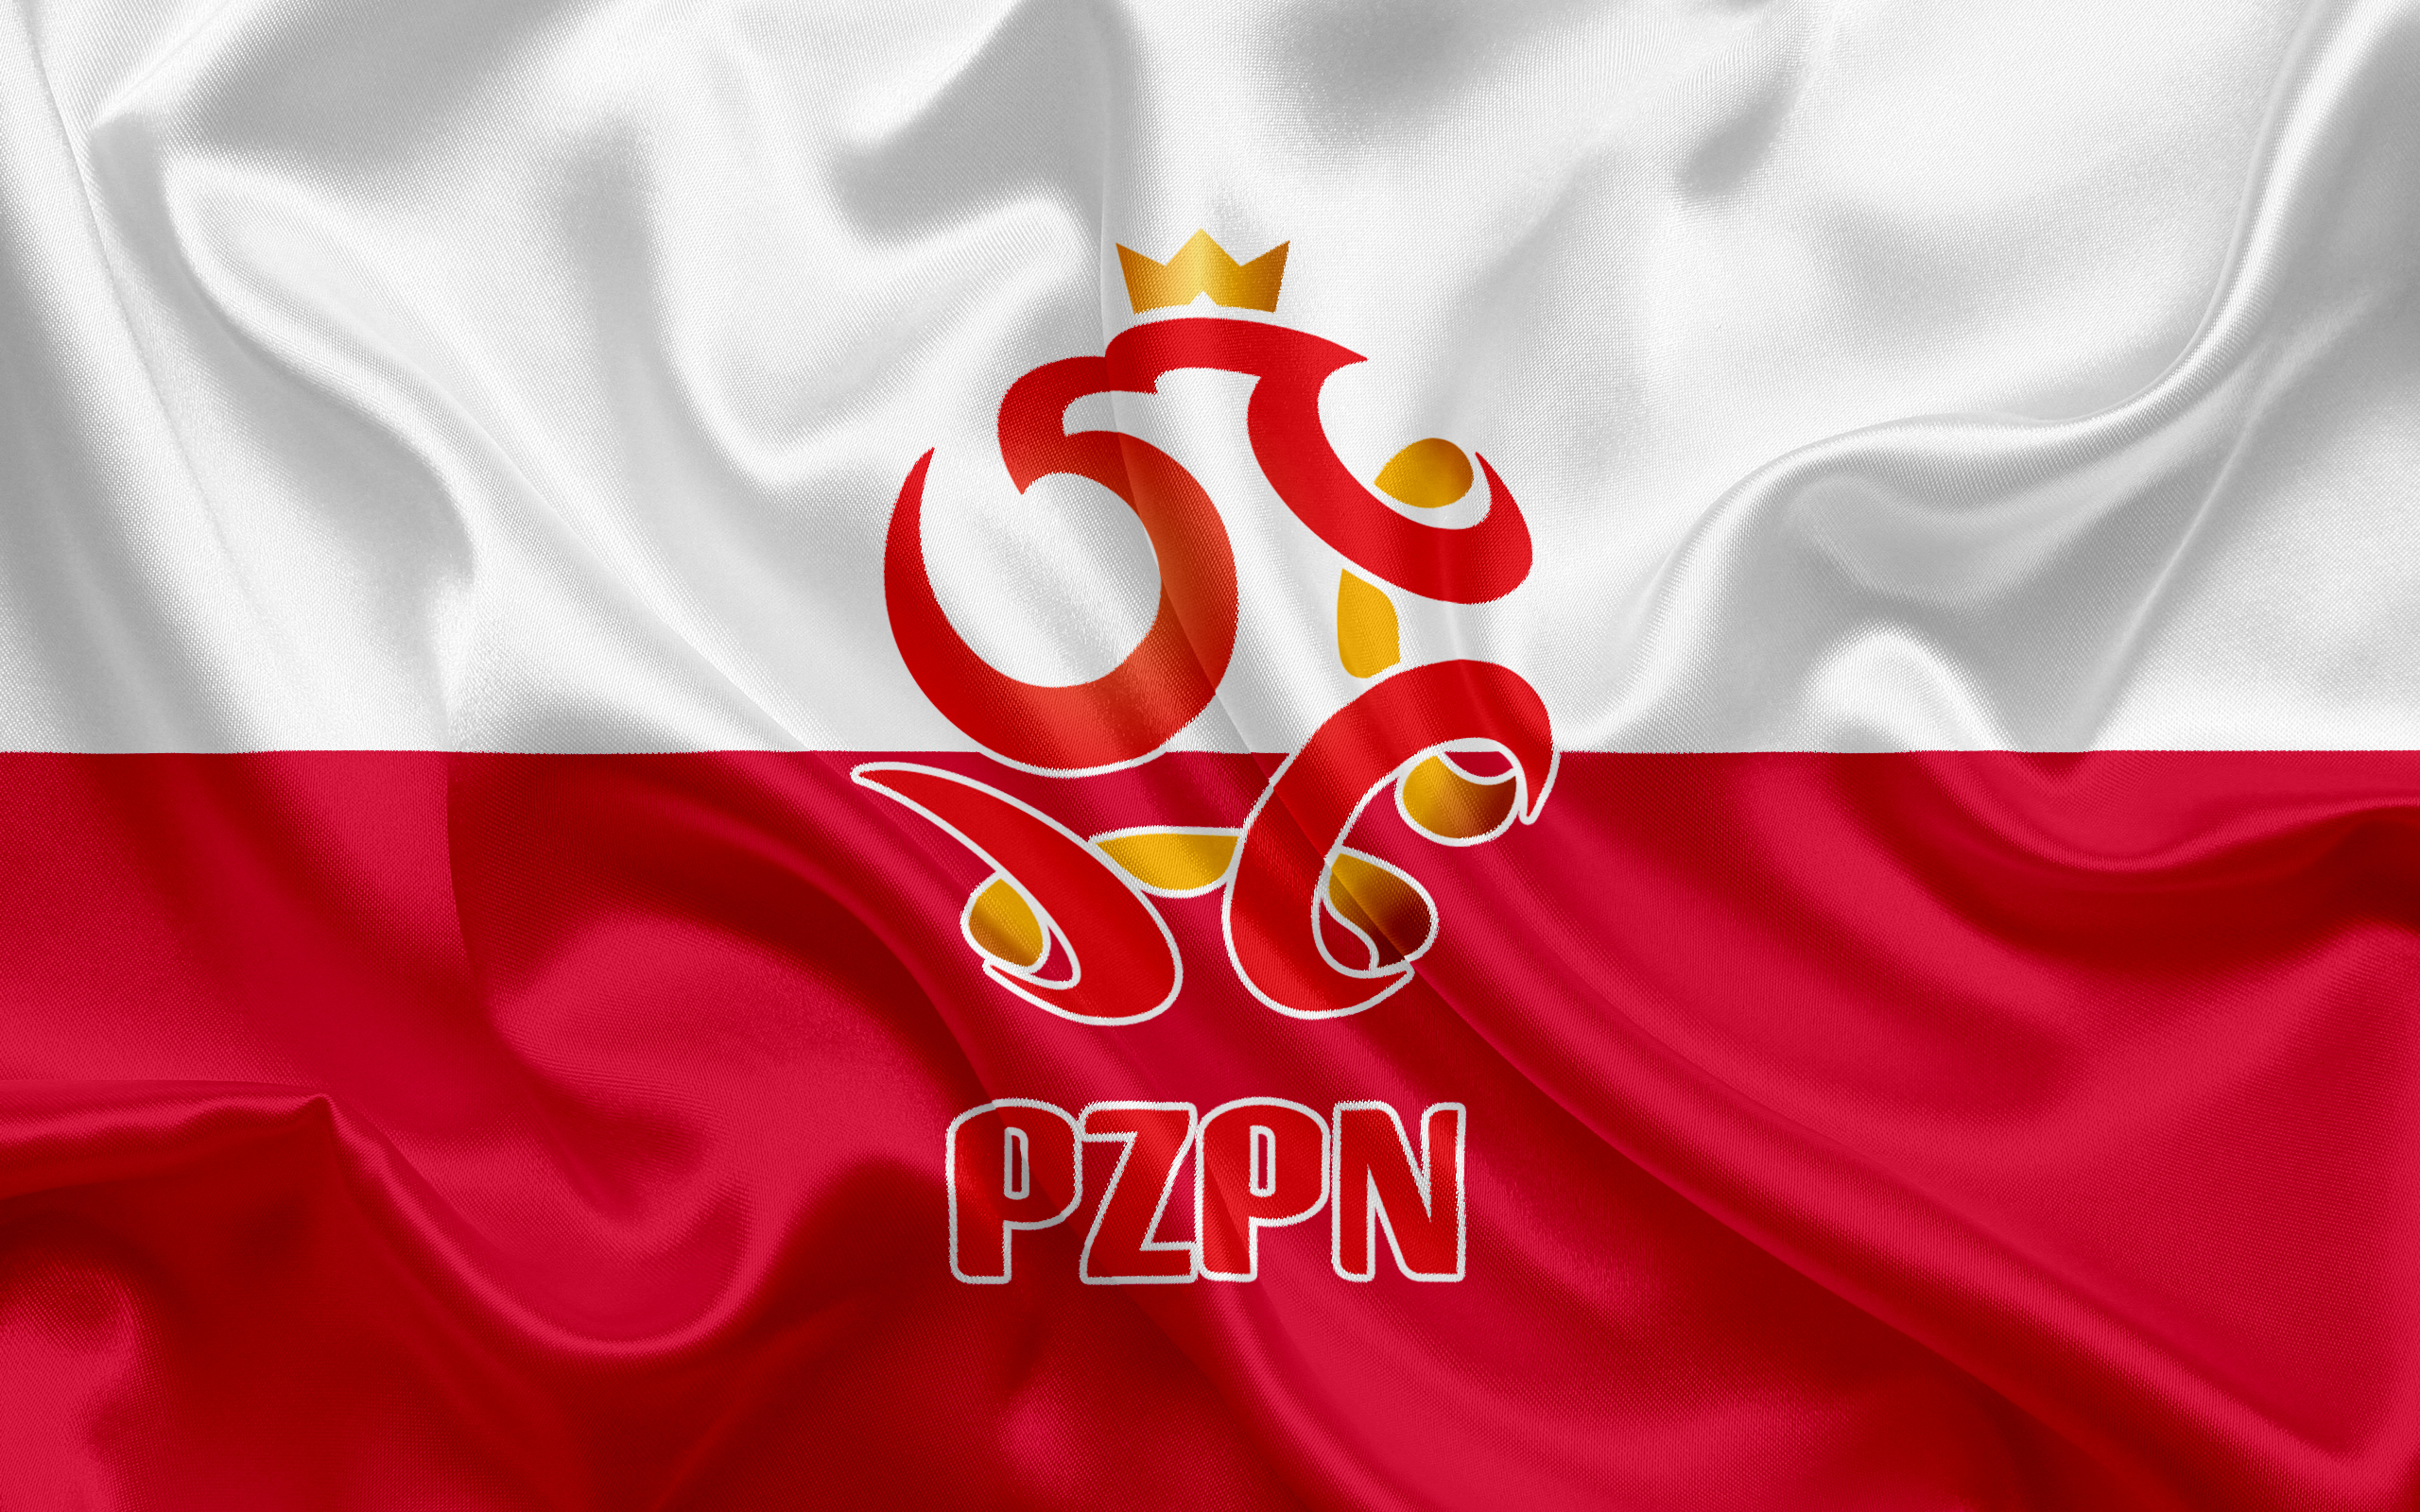 Скачать обои Сборная Польши По Футболу на телефон бесплатно